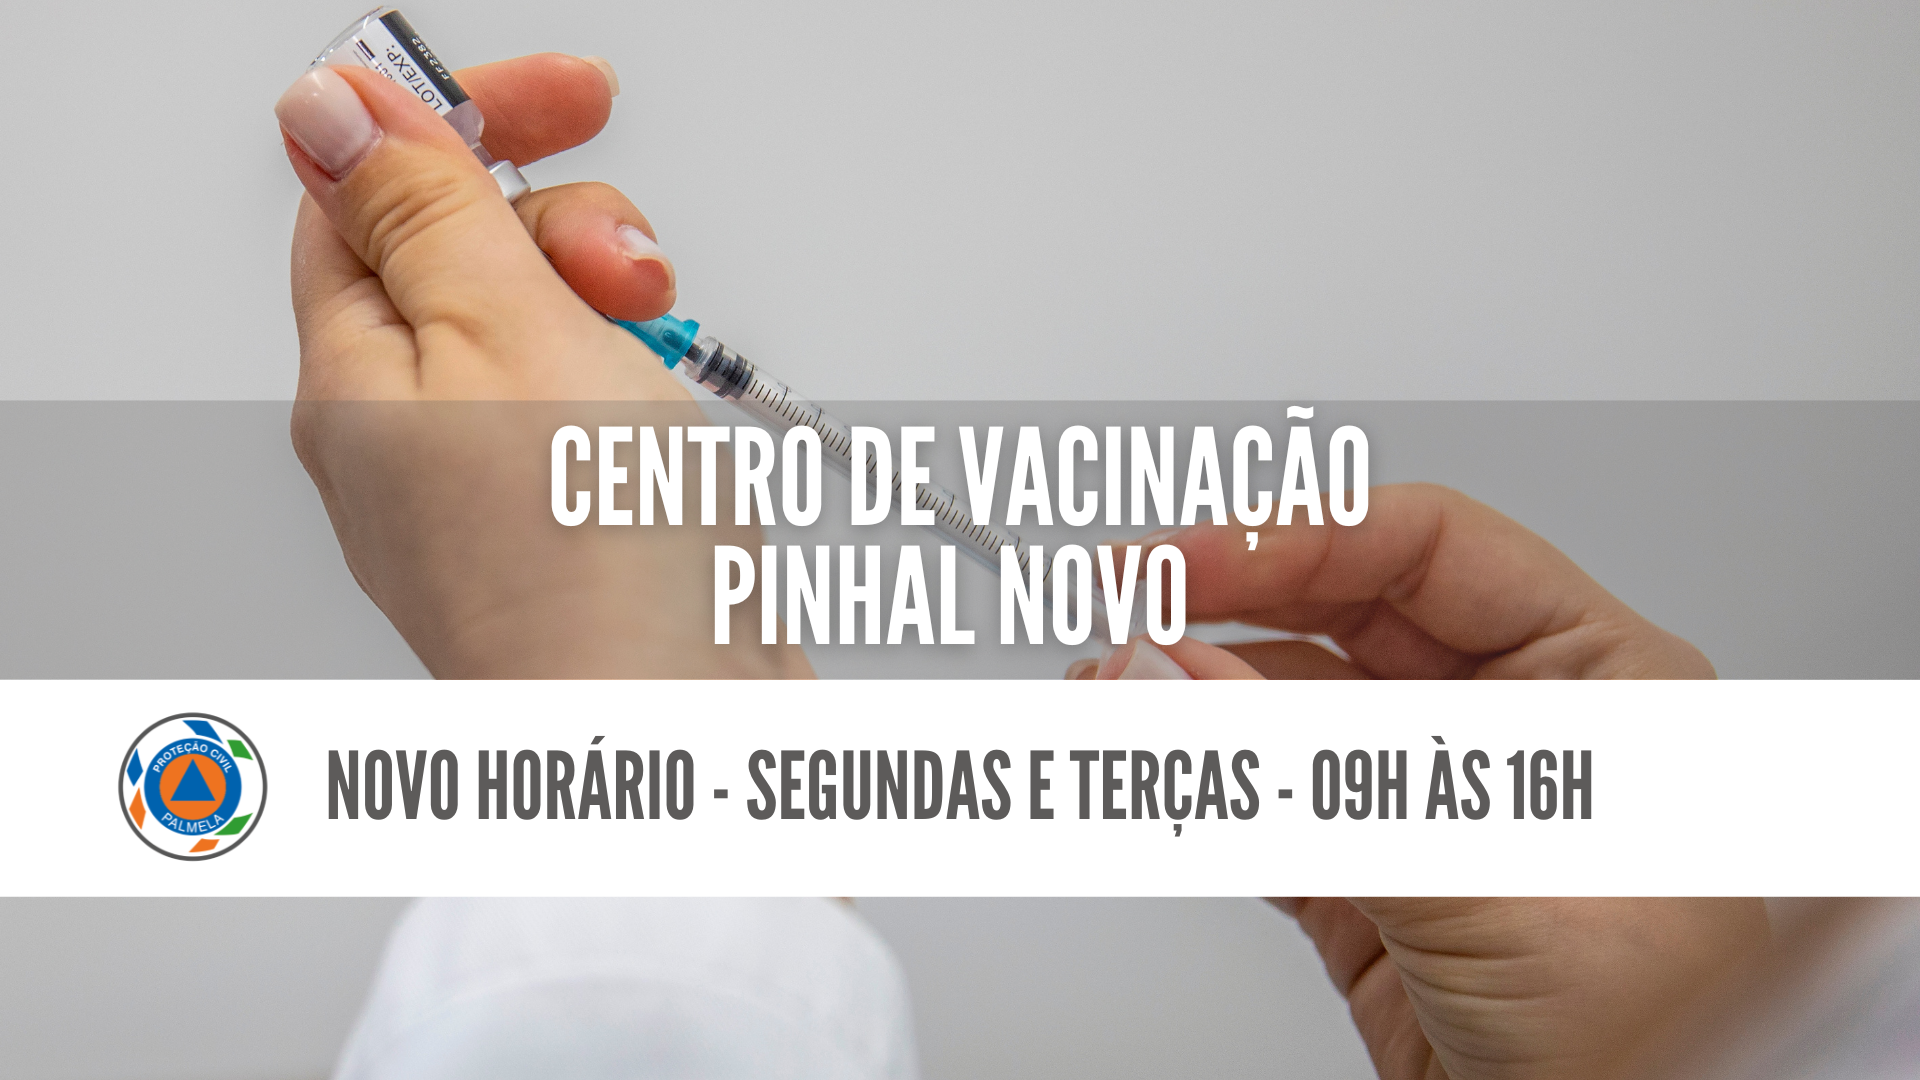 Centro de Vacinação Pinhal Novo: novo horário em setembro